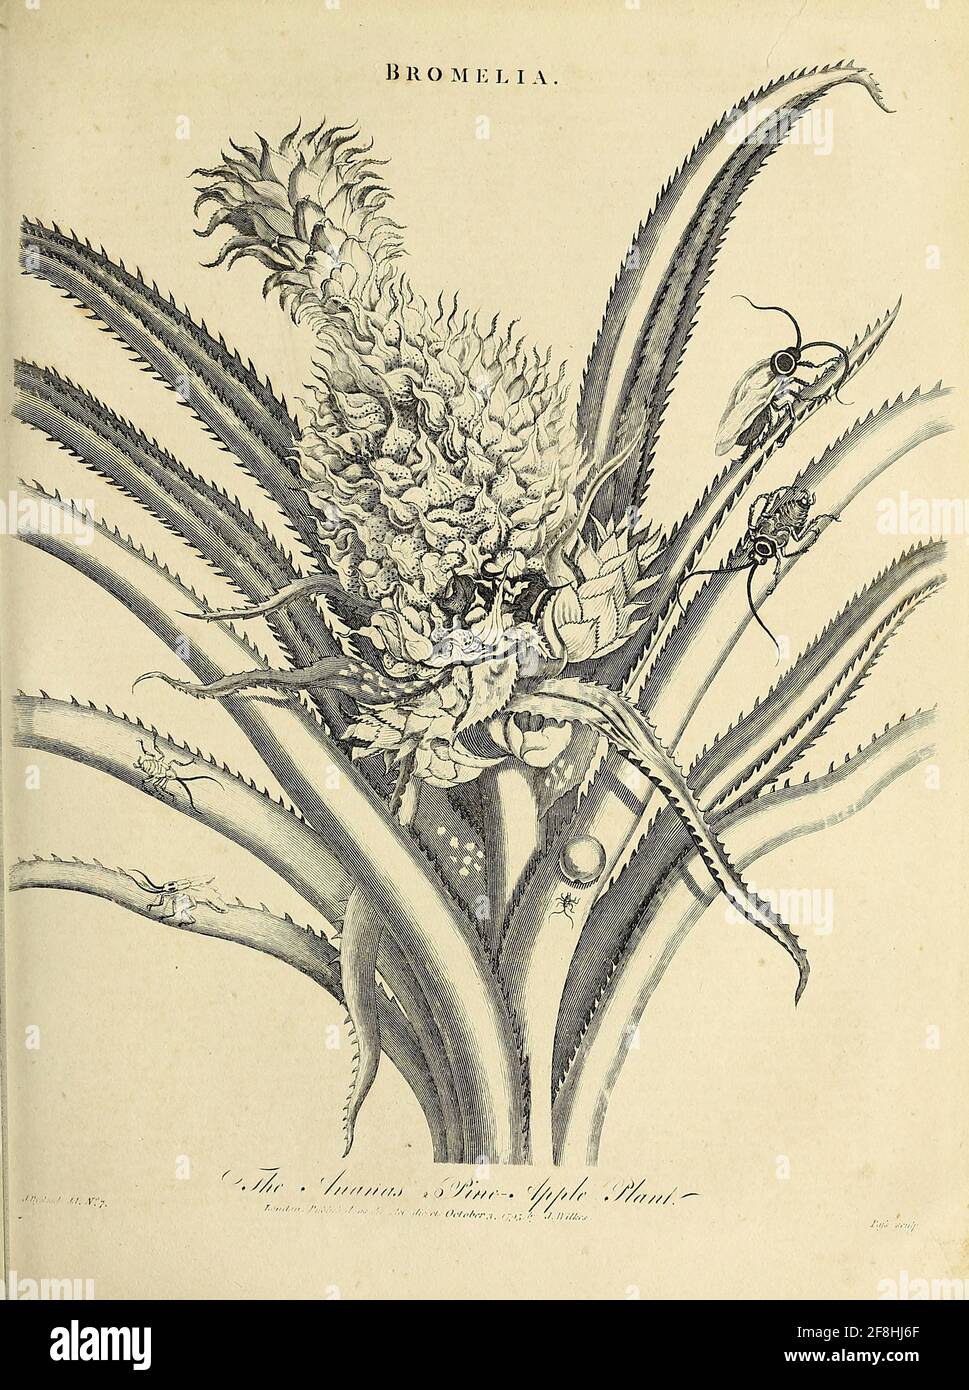 Ananas - Bromelia die Ananas[2][3] (Ananas comosus) ist eine tropische Pflanze mit essbarer Frucht und die wirtschaftlich bedeutendste Pflanze in der Familie der Bromeliaceae.[4] die Ananas ist in Südamerika heimisch, wo sie seit vielen Jahrhunderten angebaut wird. Kupferstich aus der Encyclopaedia Londinensis oder, Universelles Wörterbuch der Künste, Wissenschaften und Literatur; Band III; herausgegeben von Wilkes, John. Veröffentlicht 1810 in London Stockfoto